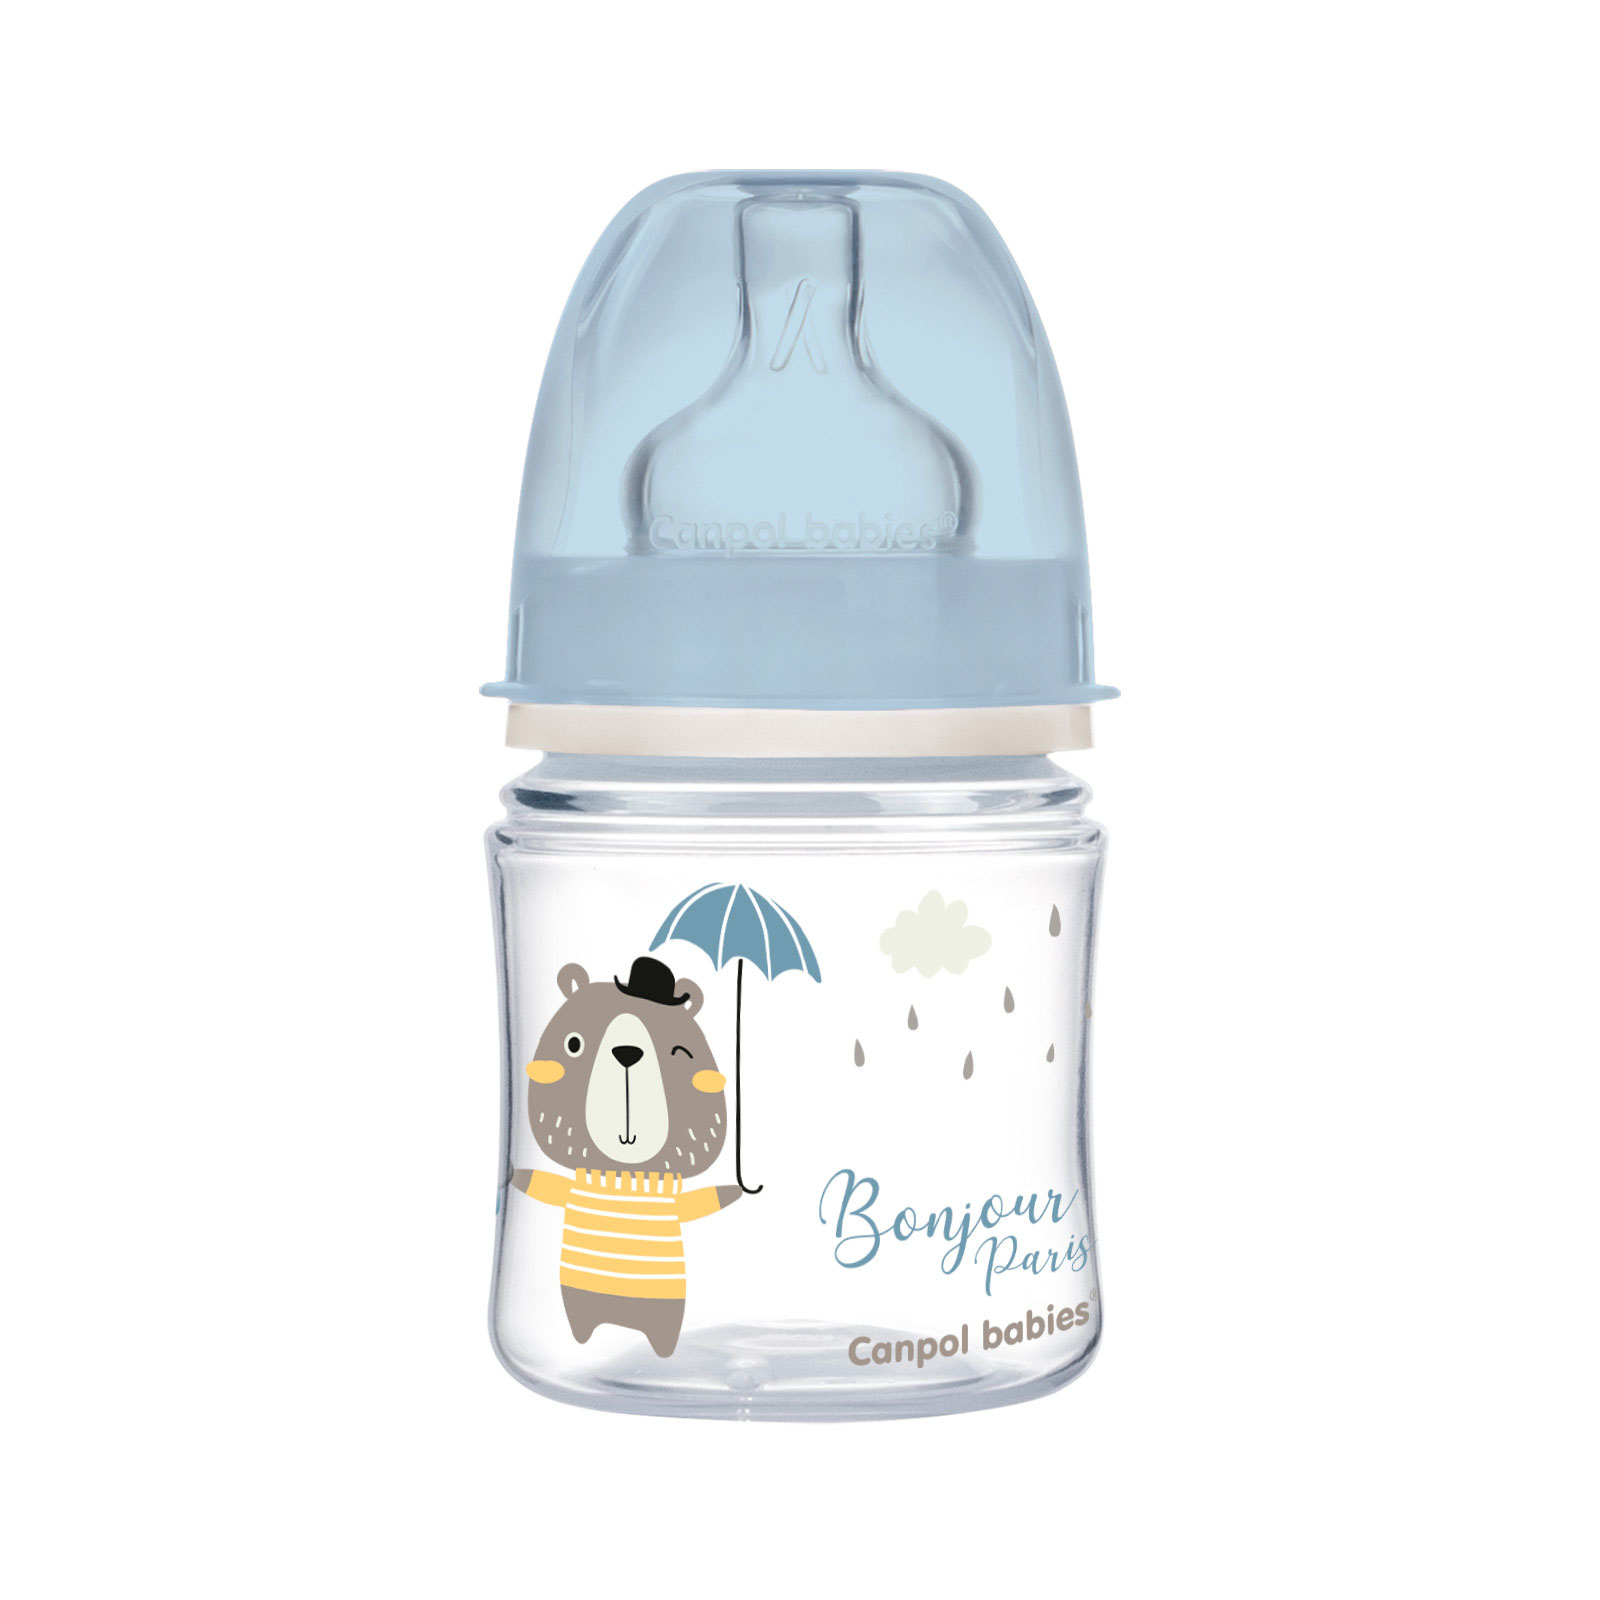 Бутылочка для кормления Canpol babies Bonjour Paris с широким отверстием 120 мл Синяя (35/231_blu)